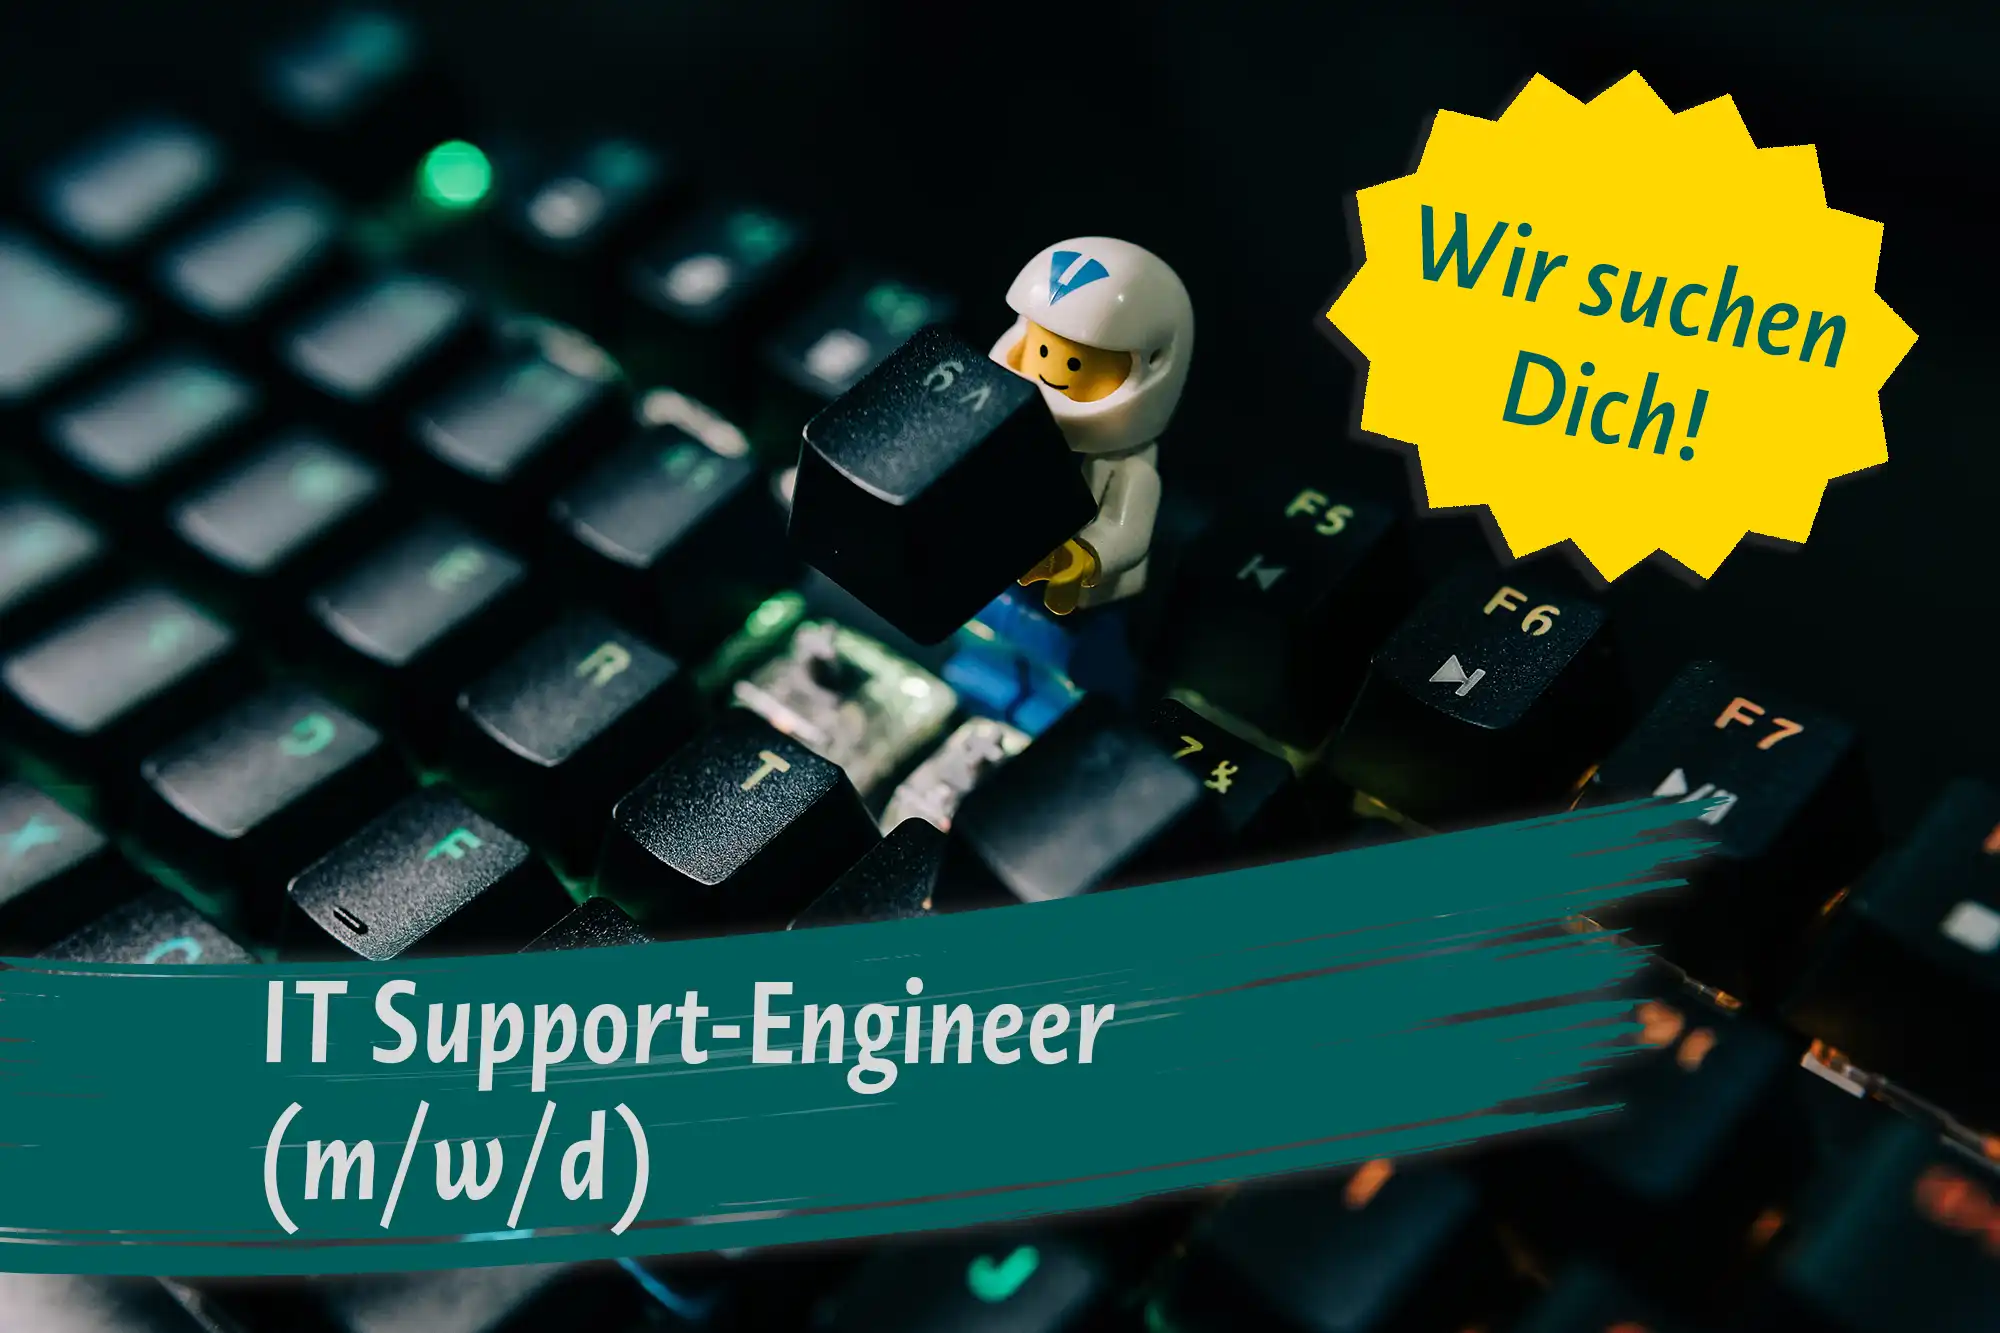 Deskcenter_Support Engineer